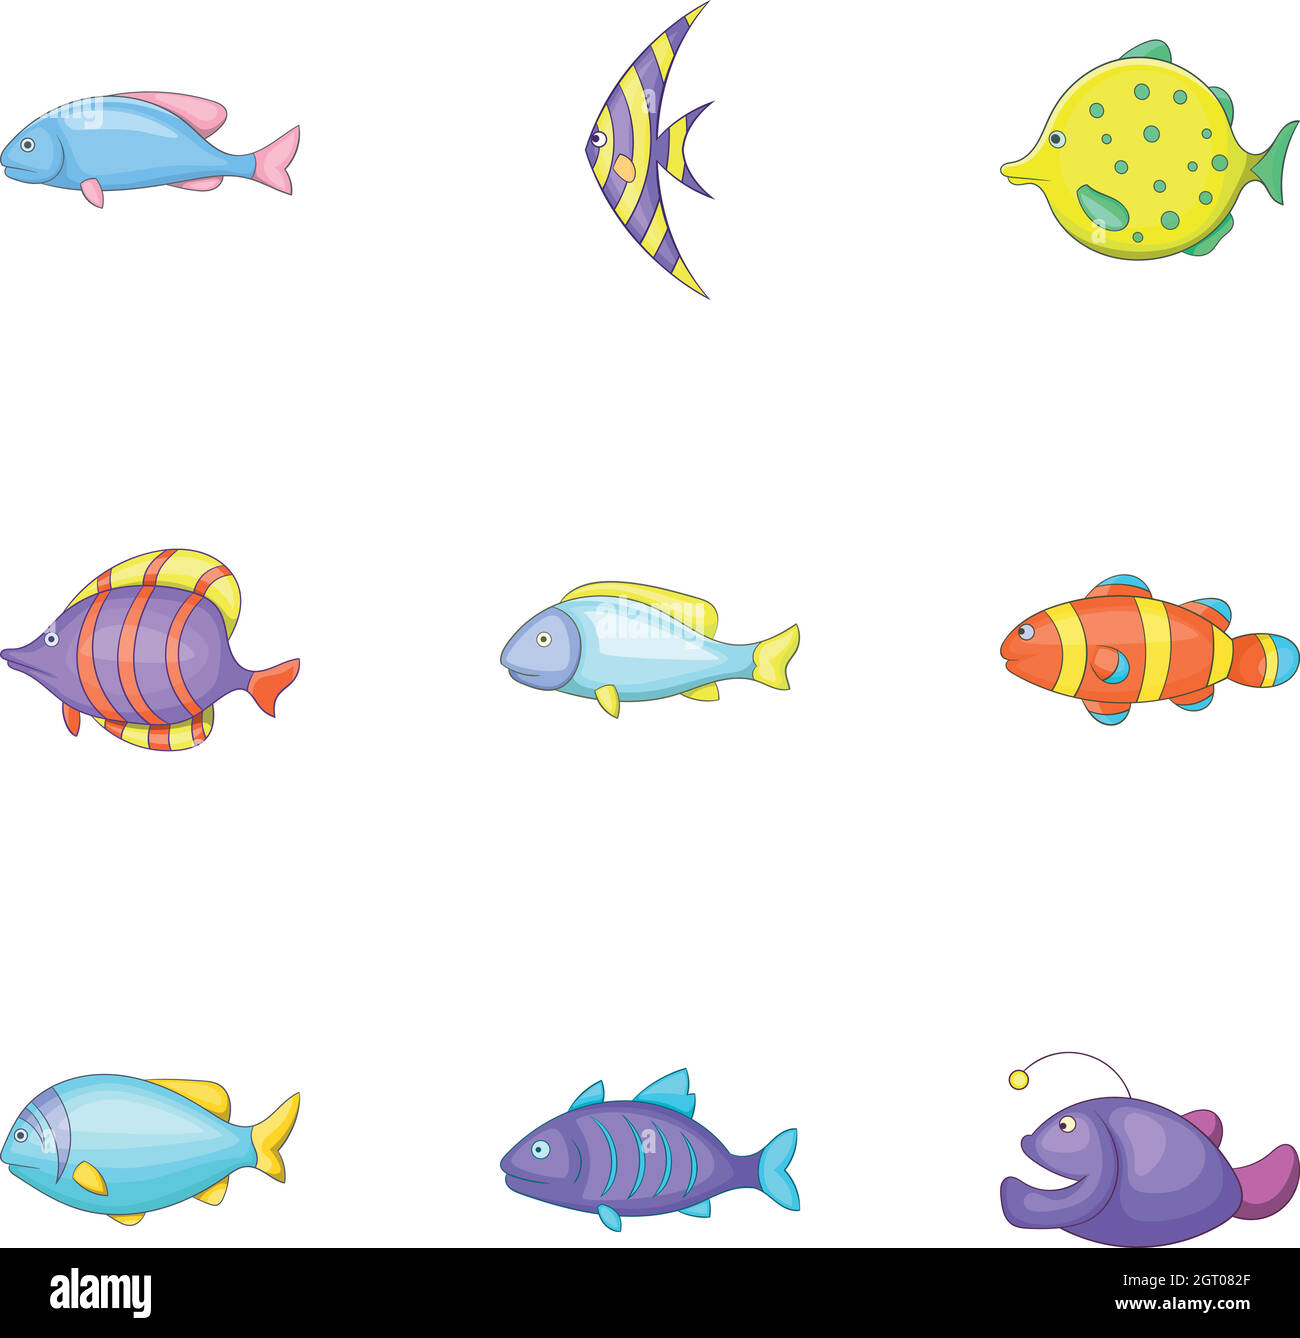 Conjunto de iconos de especies de peces marinos, estilo de dibujos animados Ilustración del Vector